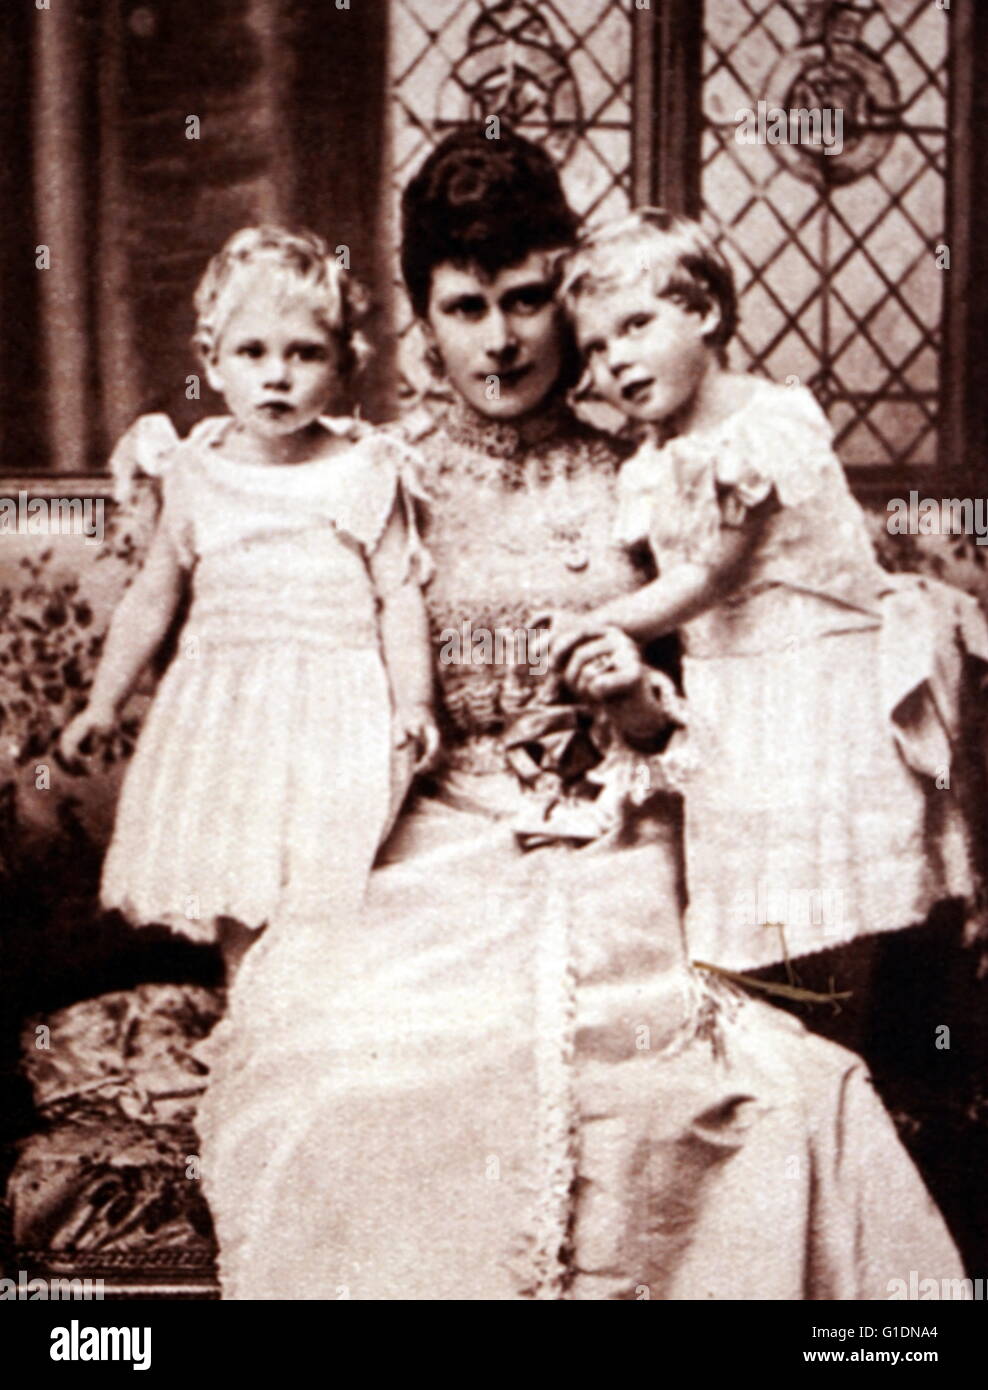 Fotografía de la Reina María de Teck, La Duquesa de York, con sus hijos Prince Albert Frederick Arthur George (1895-1952) y el Príncipe George, duque de Kent (1902-1942). Fecha del siglo XIX Foto de stock